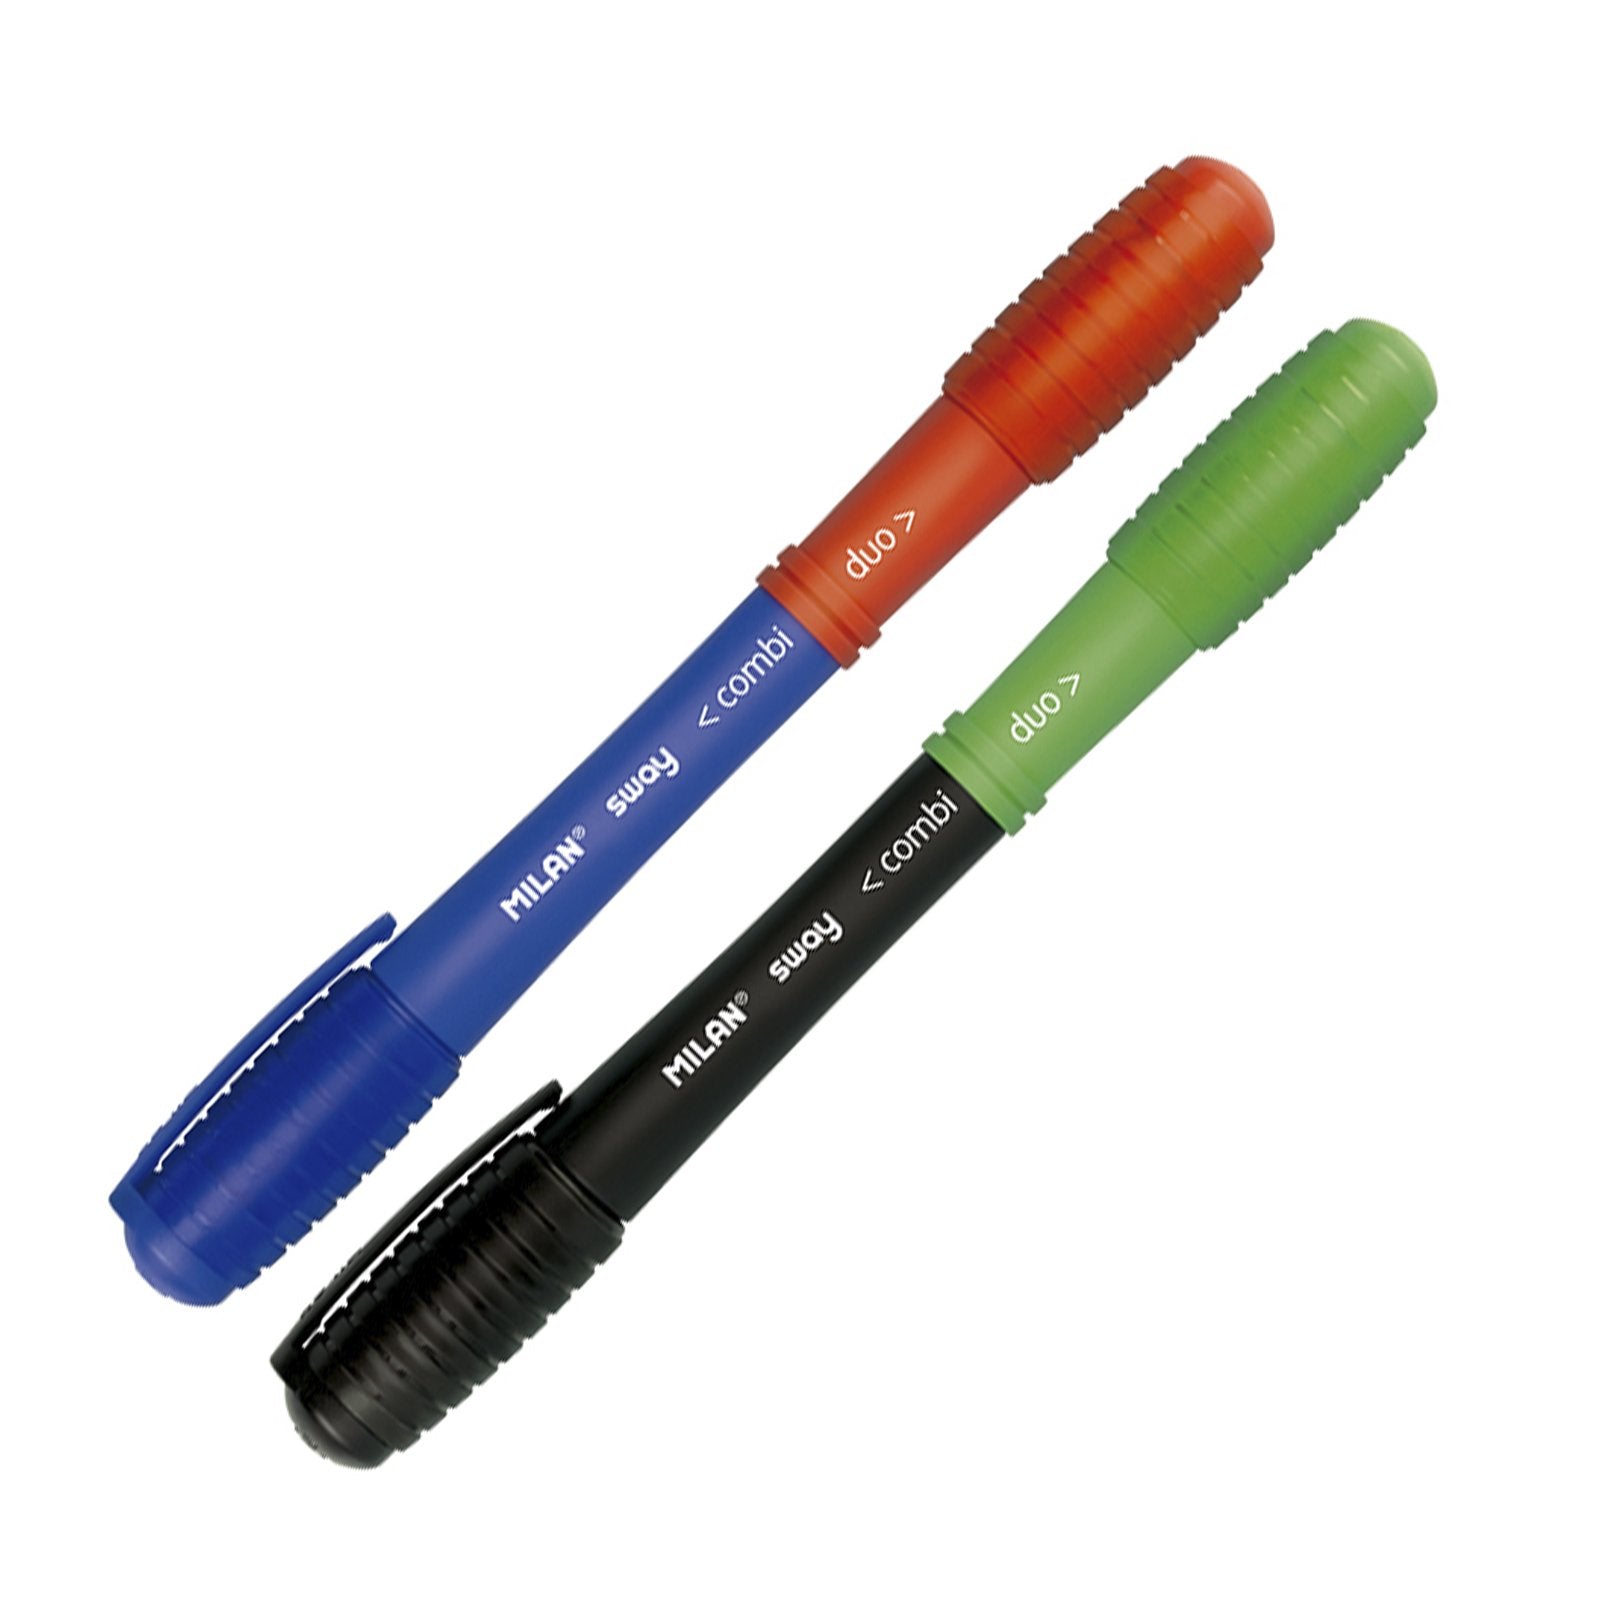 MILAN SWAY - Blíster 2 Bolígrafos Combi Duo con 4 Combinaciones Distintas de Colores